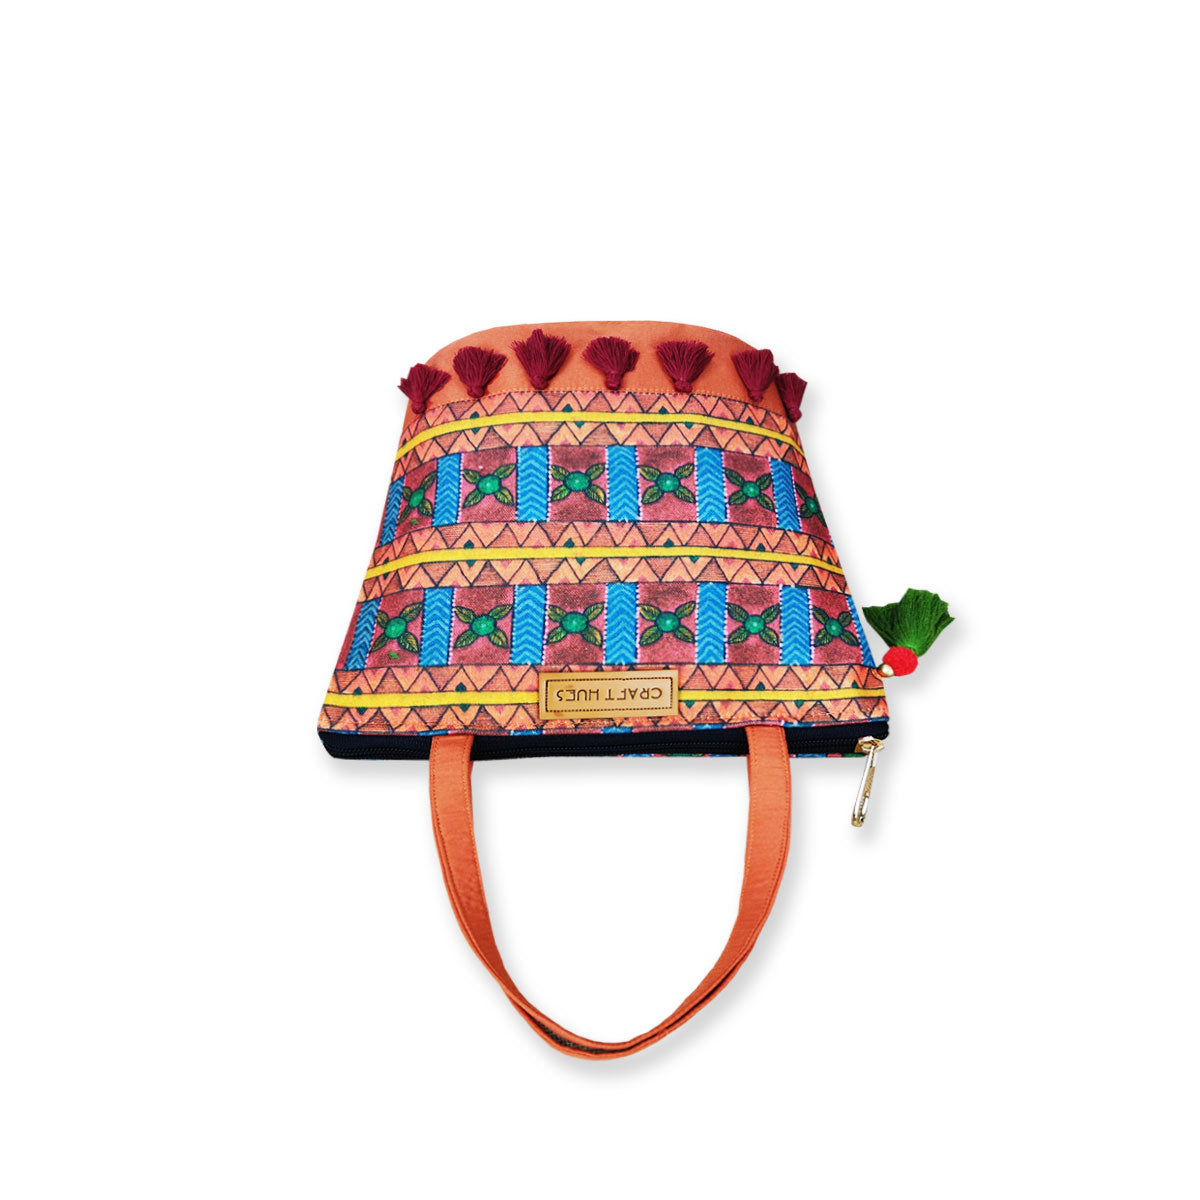 Orange Aztec Bucket Bag